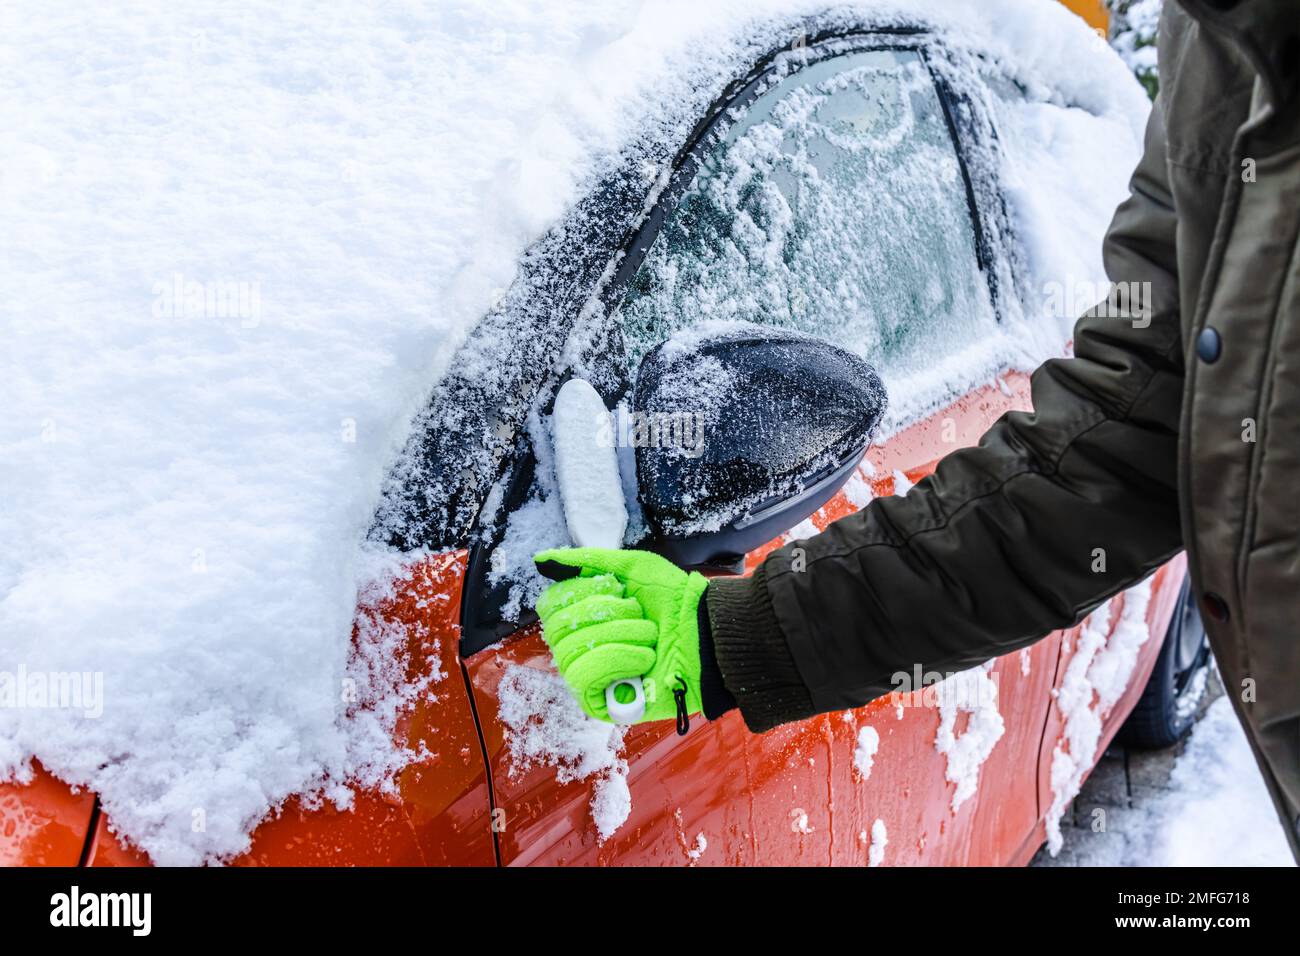 L'adolescente pulisce l'auto dopo una nevicata, rimuovendo la neve e raschiando il ghiaccio Foto Stock